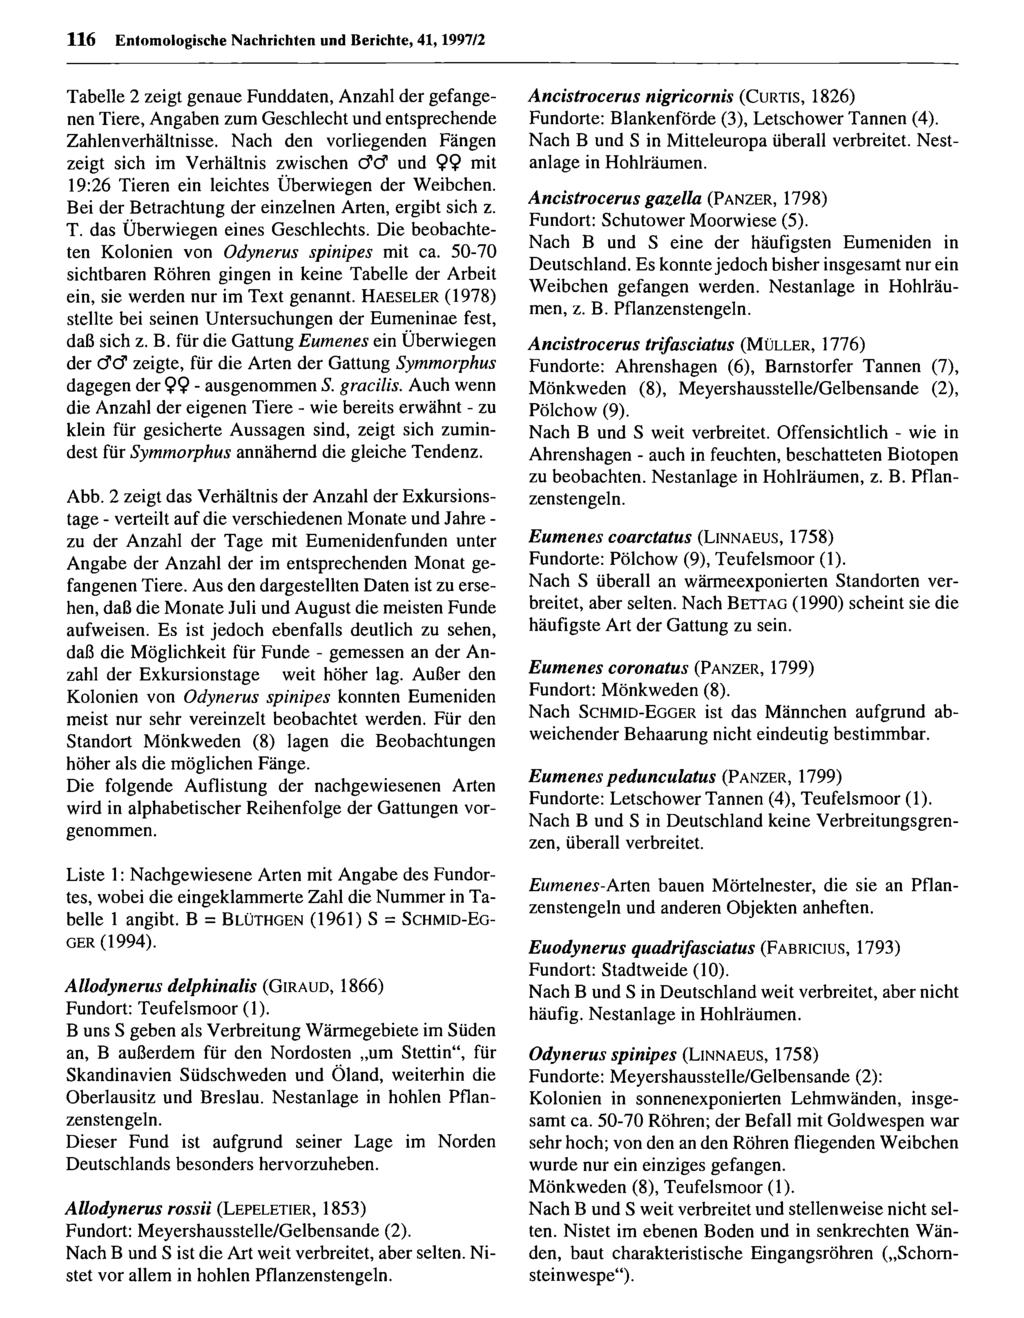 116 Entom ologische Nachrichten Entomologische und Berichte, Nachrichten 41,1997/2 und Berichte; download unter www.biologiezentrum.